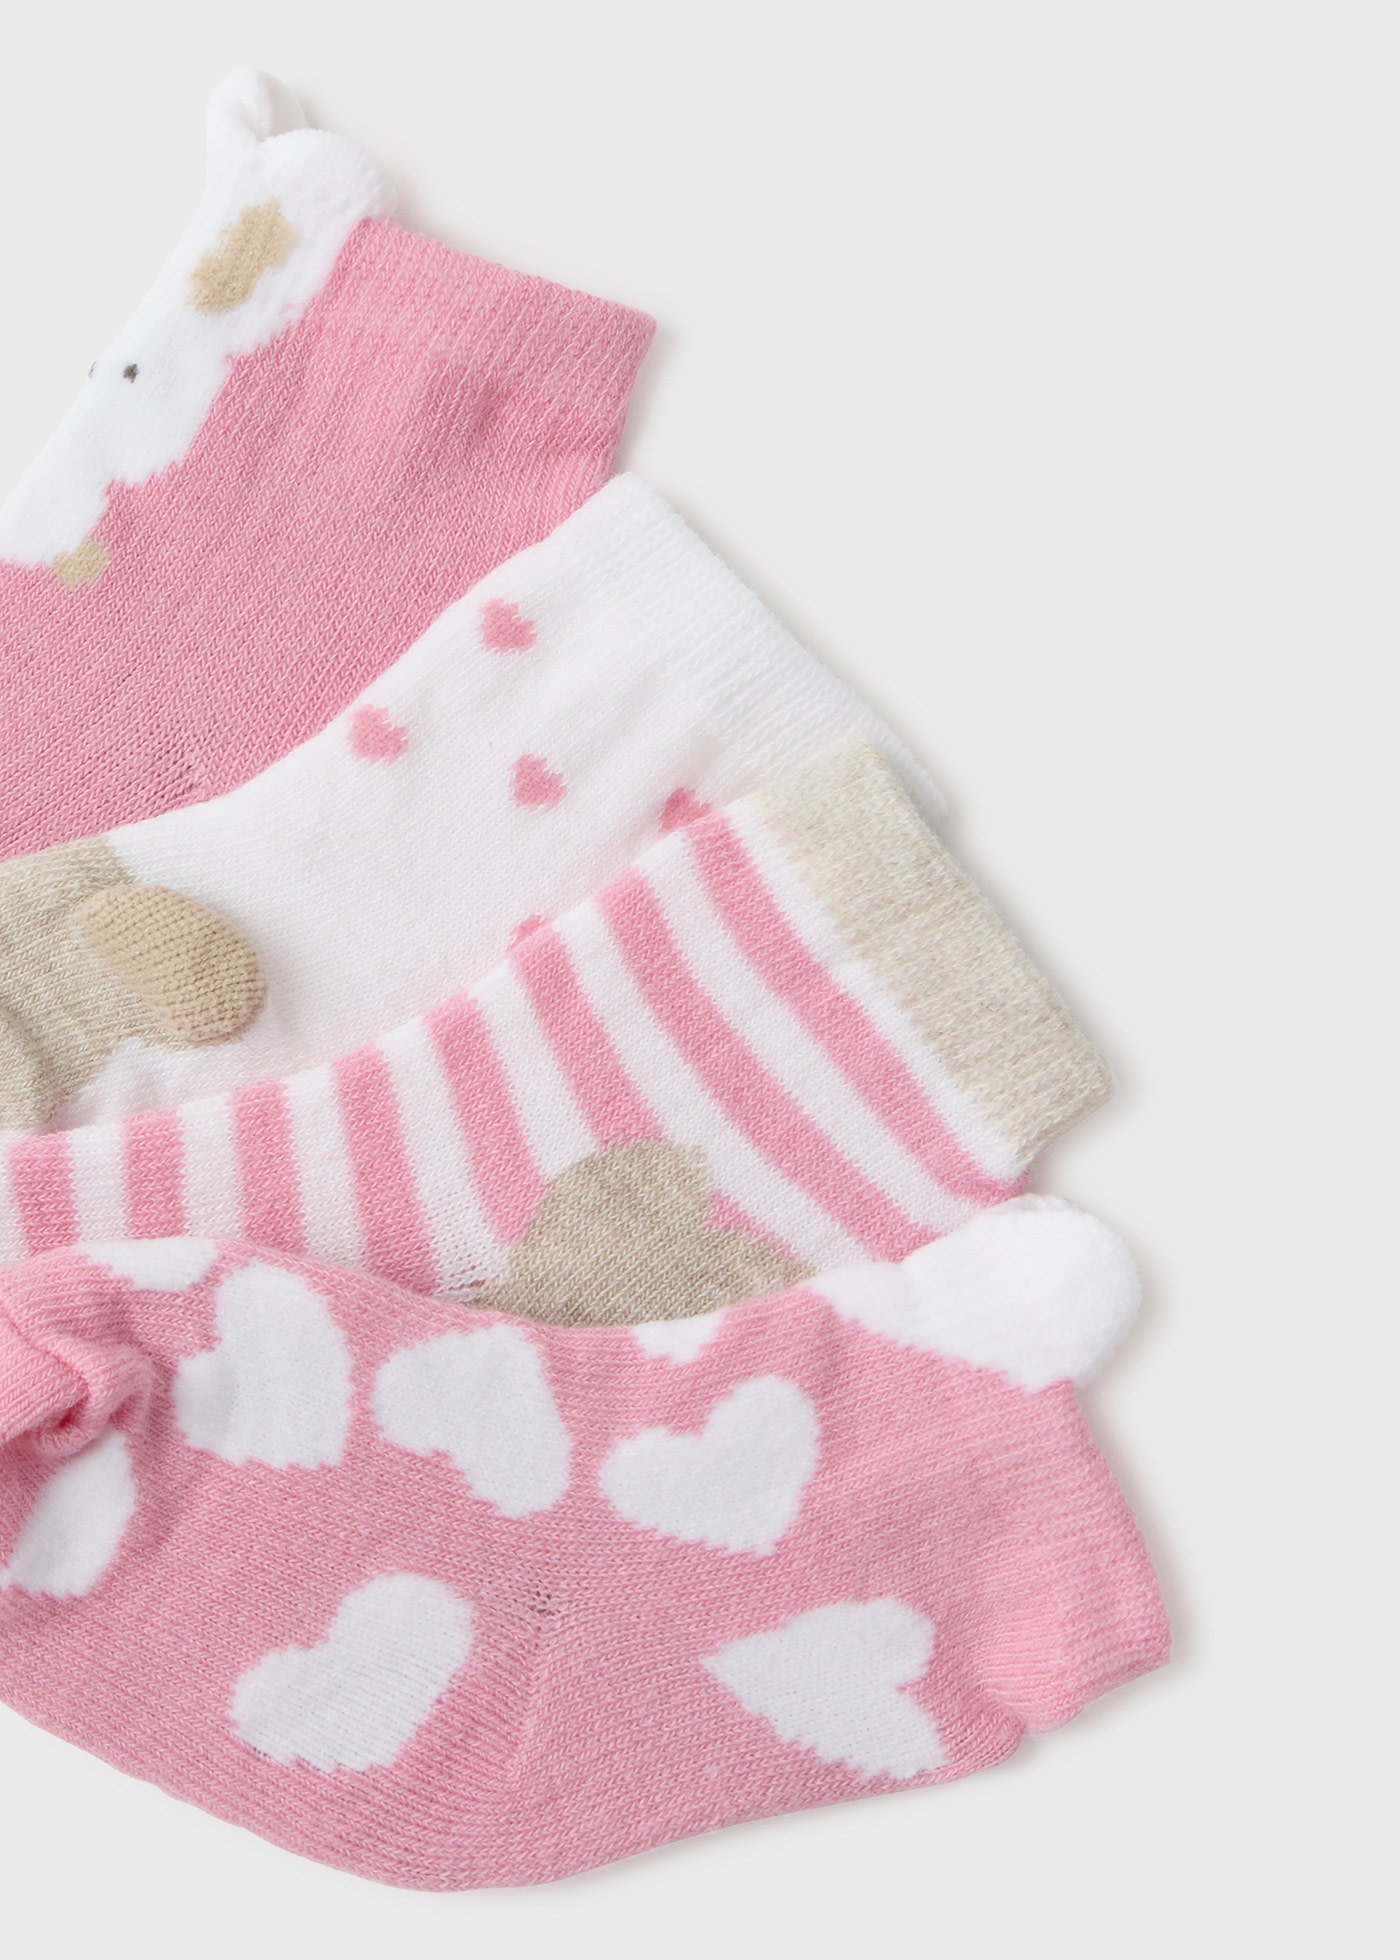 Rising Star Calcetines de bebé para niños y niñas recién nacidas de 0 a 6,  6 a 12 meses, calcetines cálidos de invierno de rizo de algodón grueso